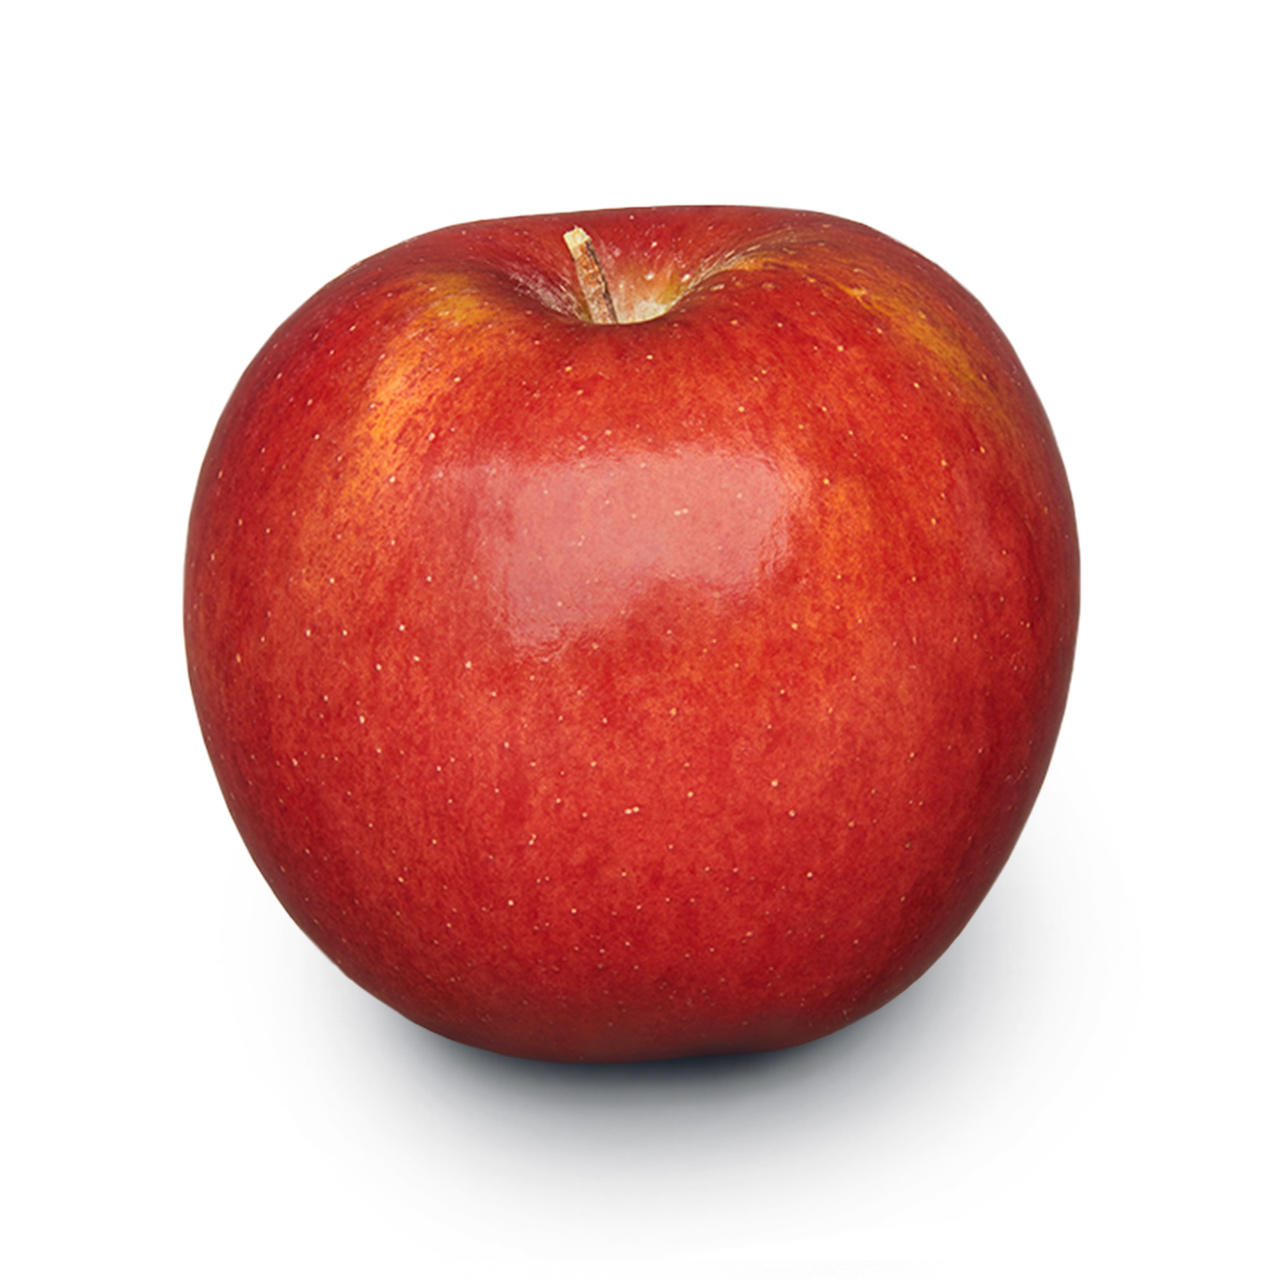 Envy er rødt og et forholdsvis nyt æble